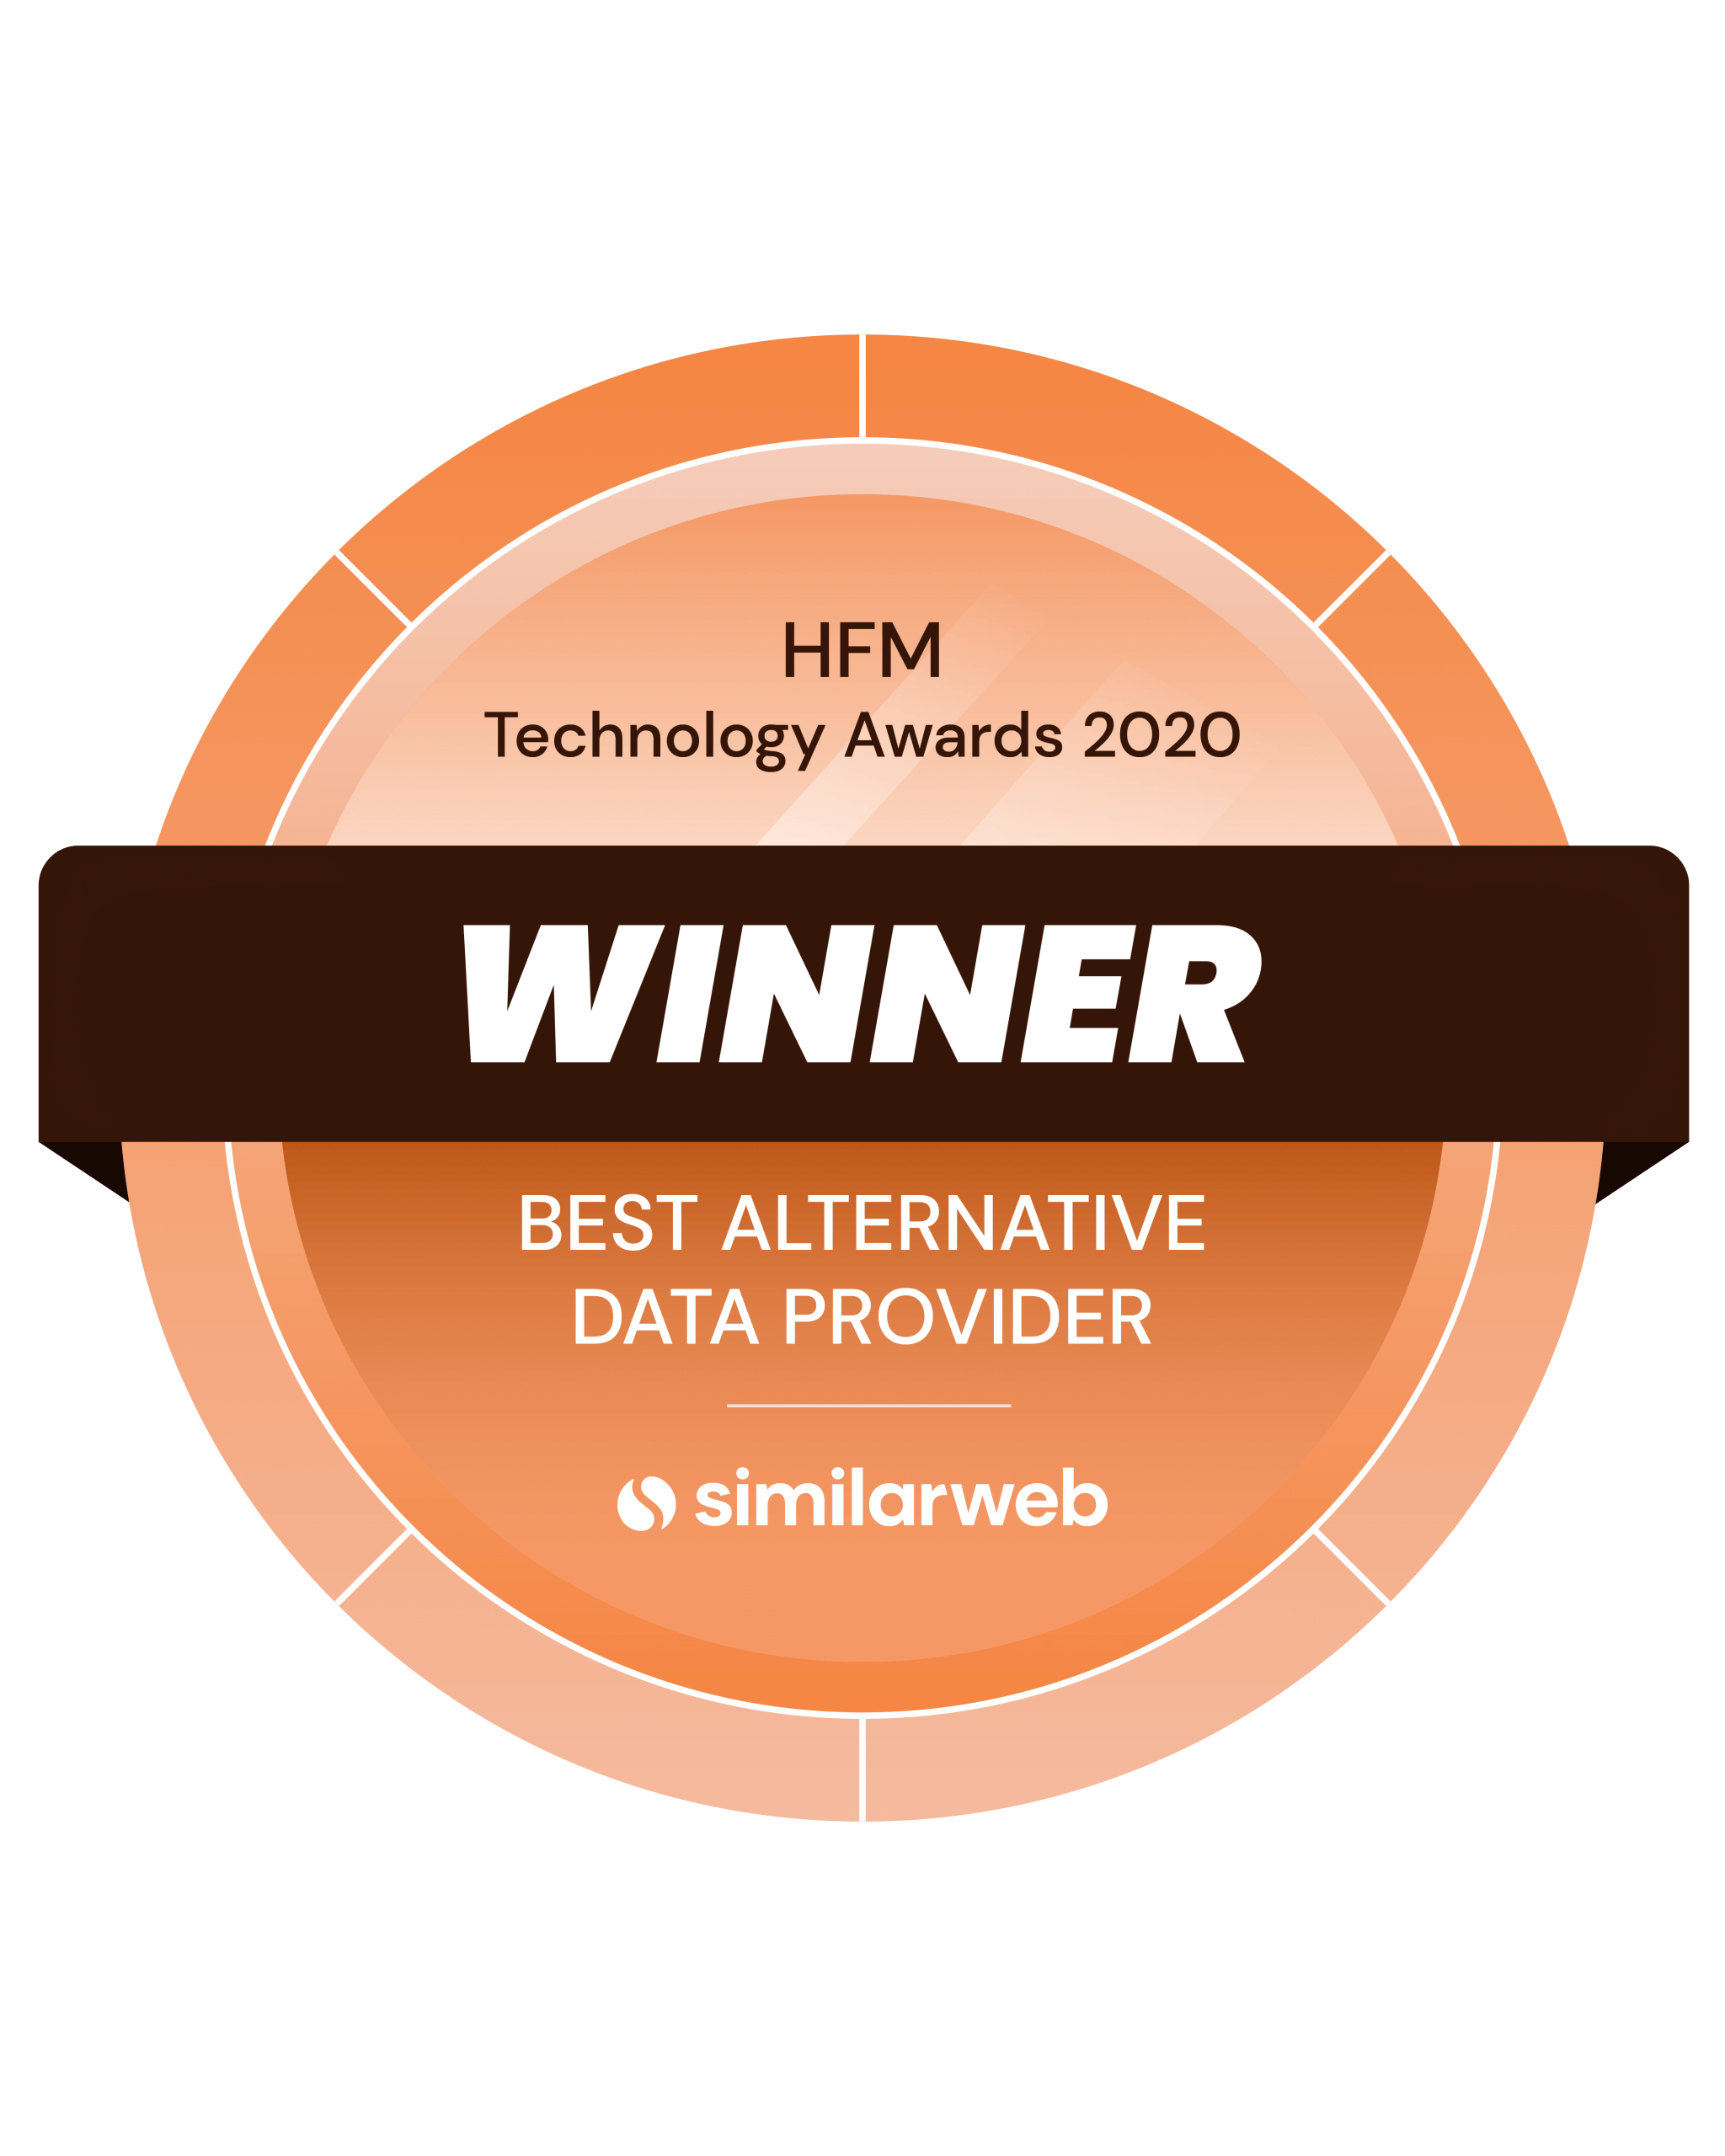 HFM Technology Awards 2020 Winner - Best Alternative Data Provider